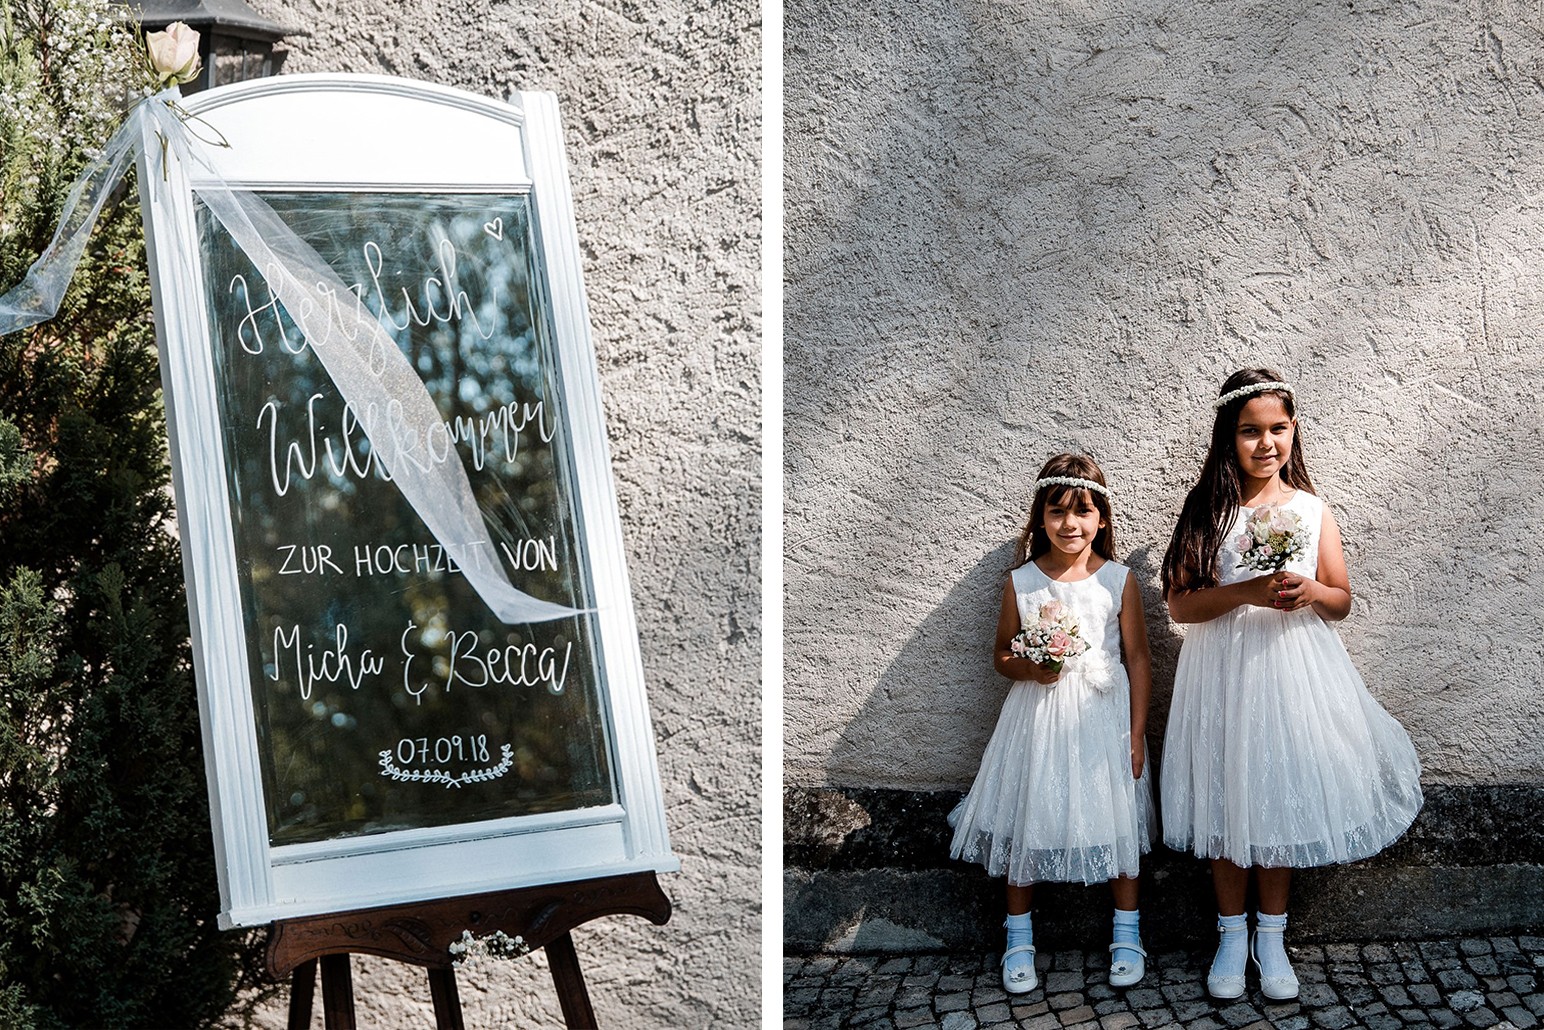 Aida + Tim | Hochzeitsfotografen am Bodensee Die Insel Mainau - Hochzeit in Deutschland  - Hochzeitsfotografie von Aida und Tim